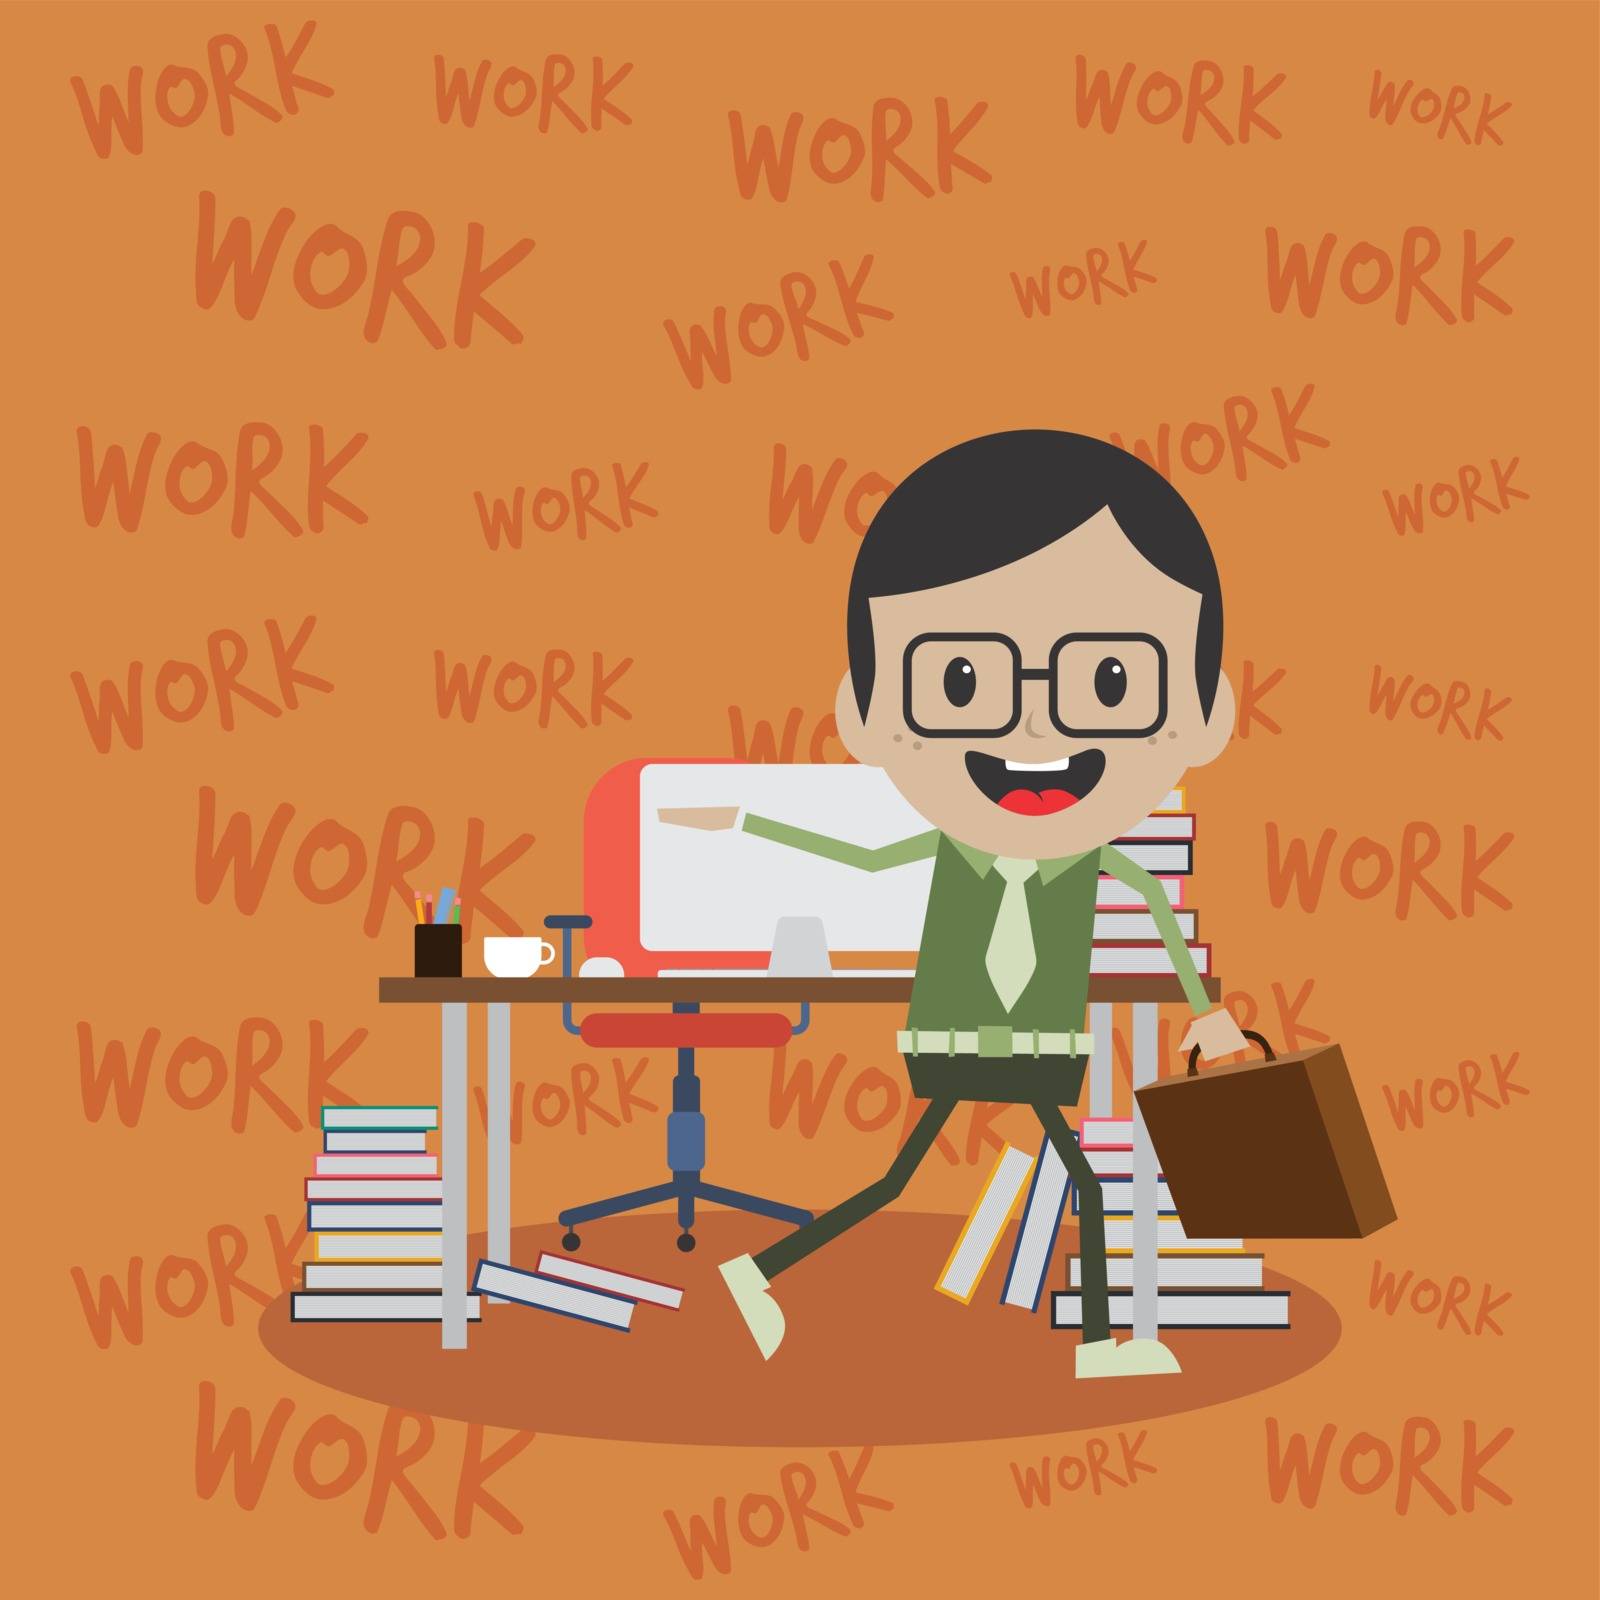 office worker on the job full task employee cartoon vector